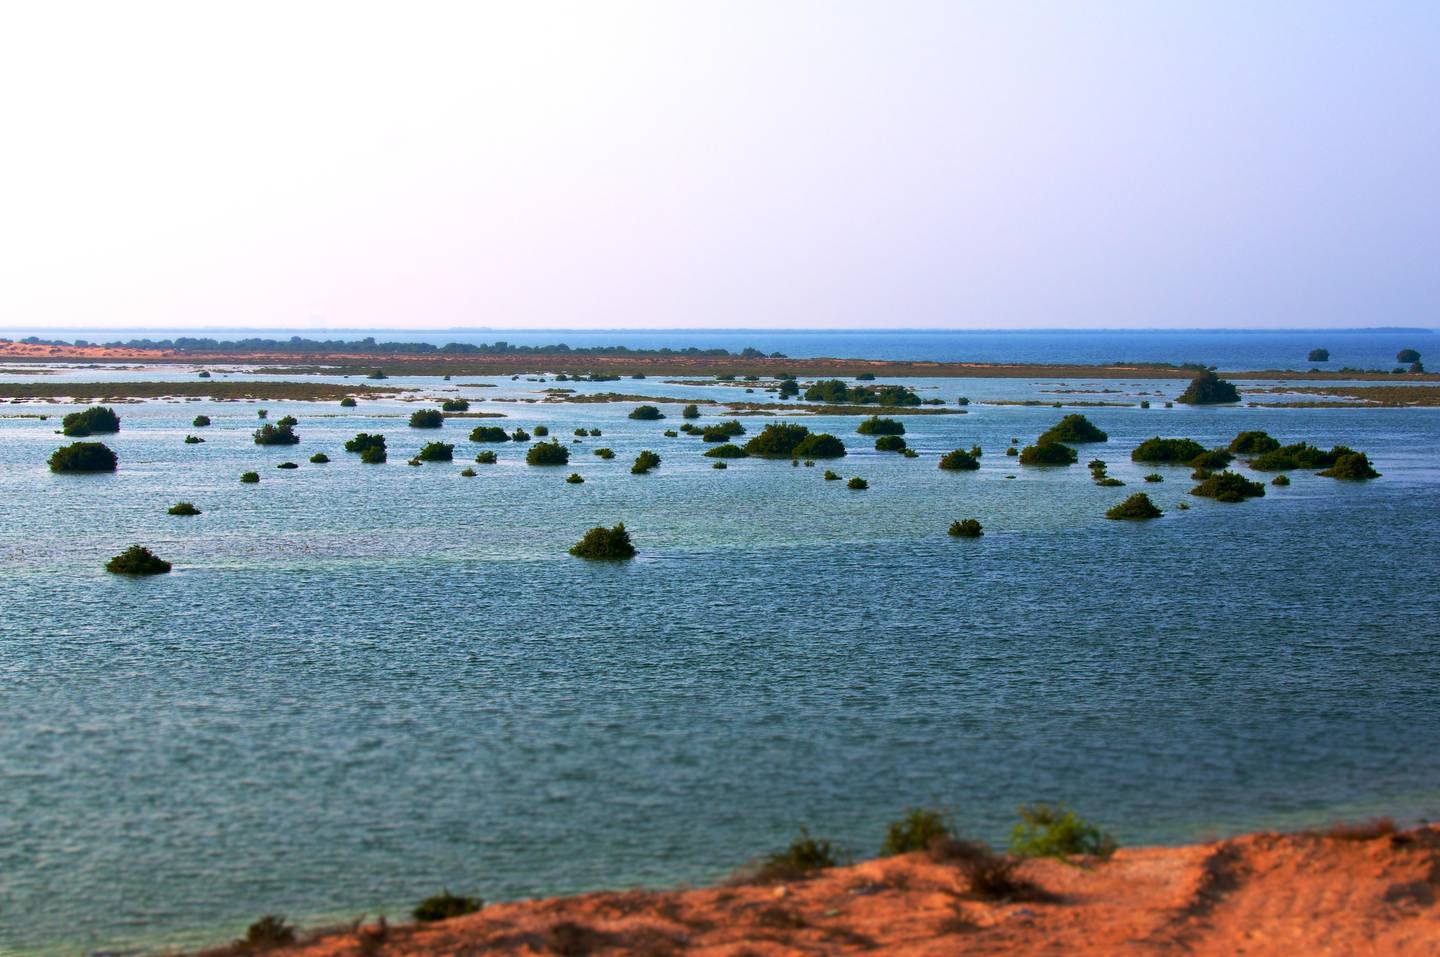 The coast of Umm Al Quwain.